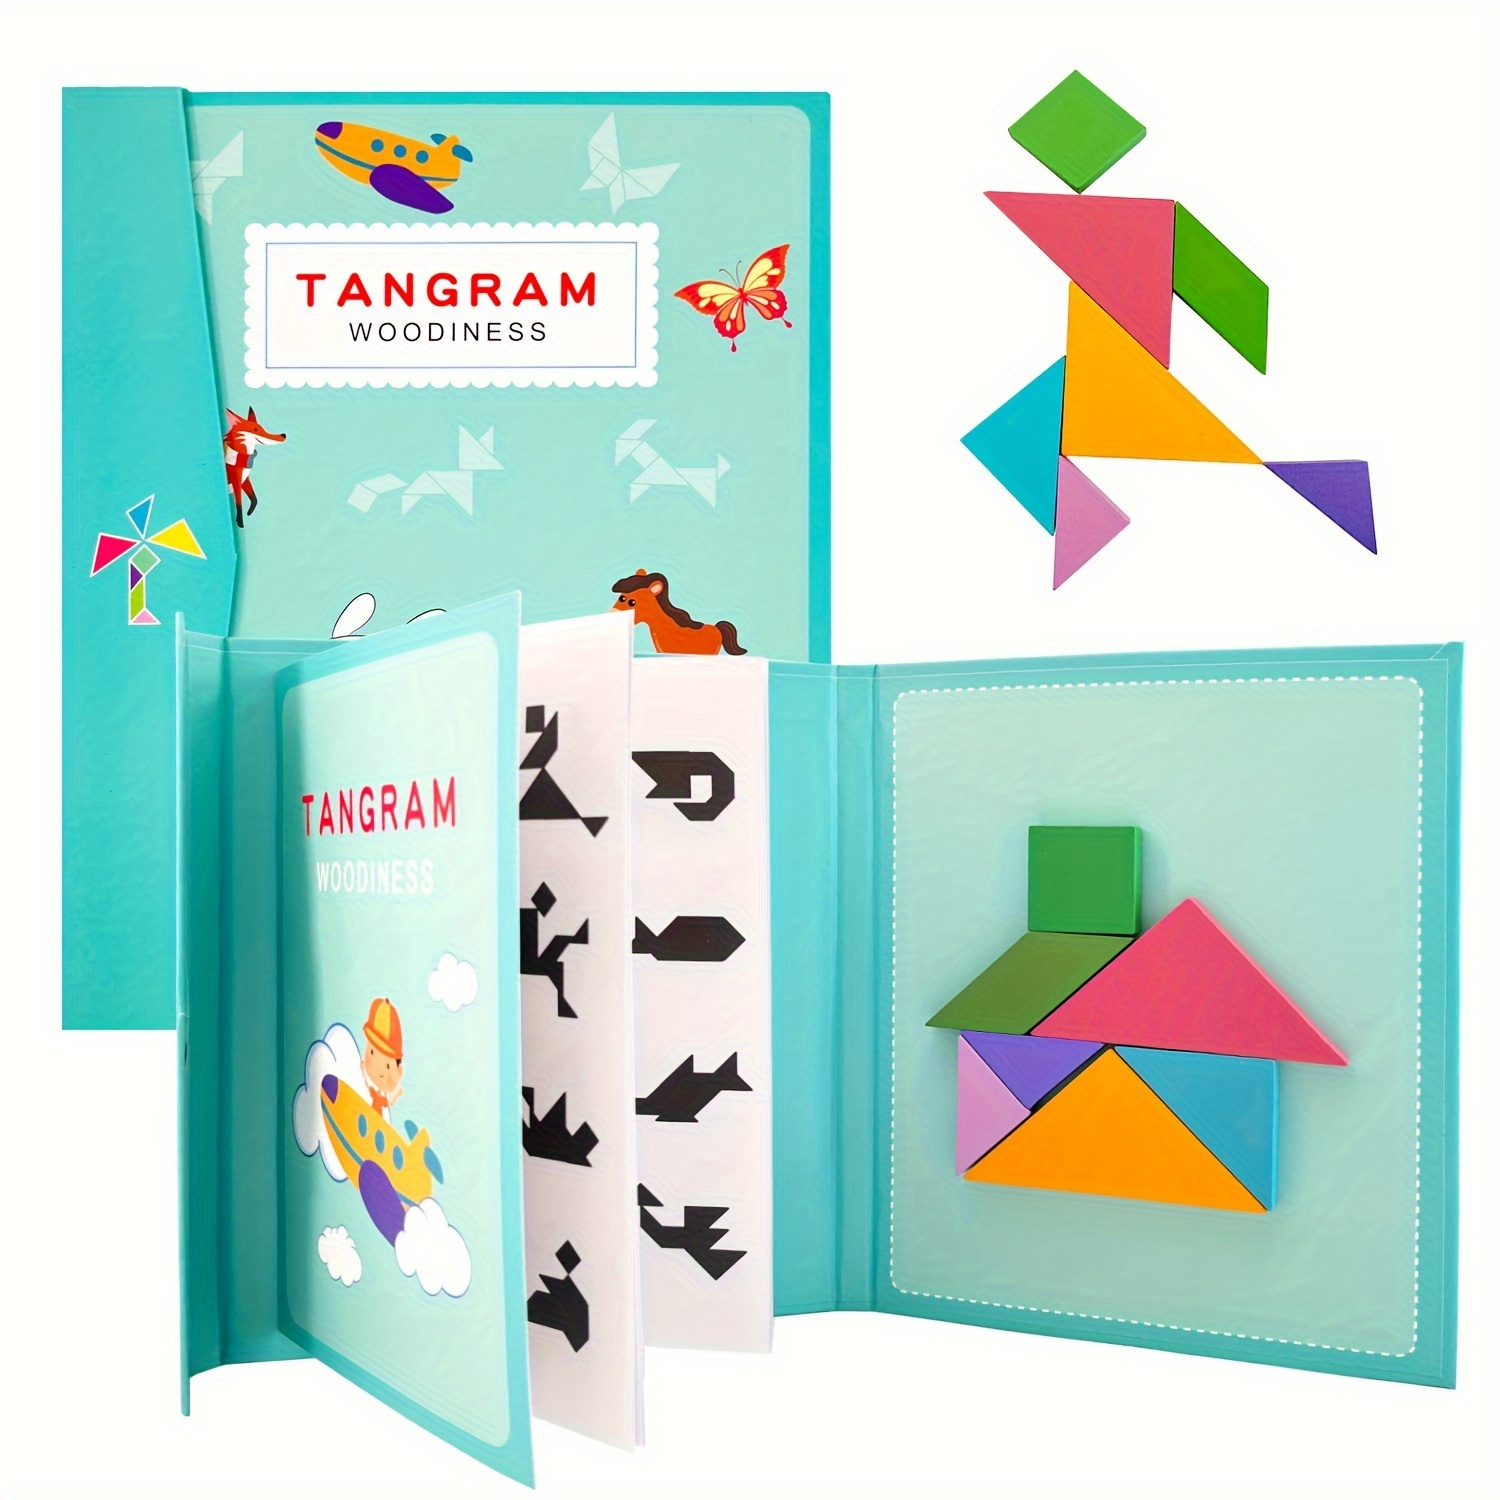 Tangram Battle - Jeux et jouets en bois - Jouets enfant - Enfants, jouets  et jeux